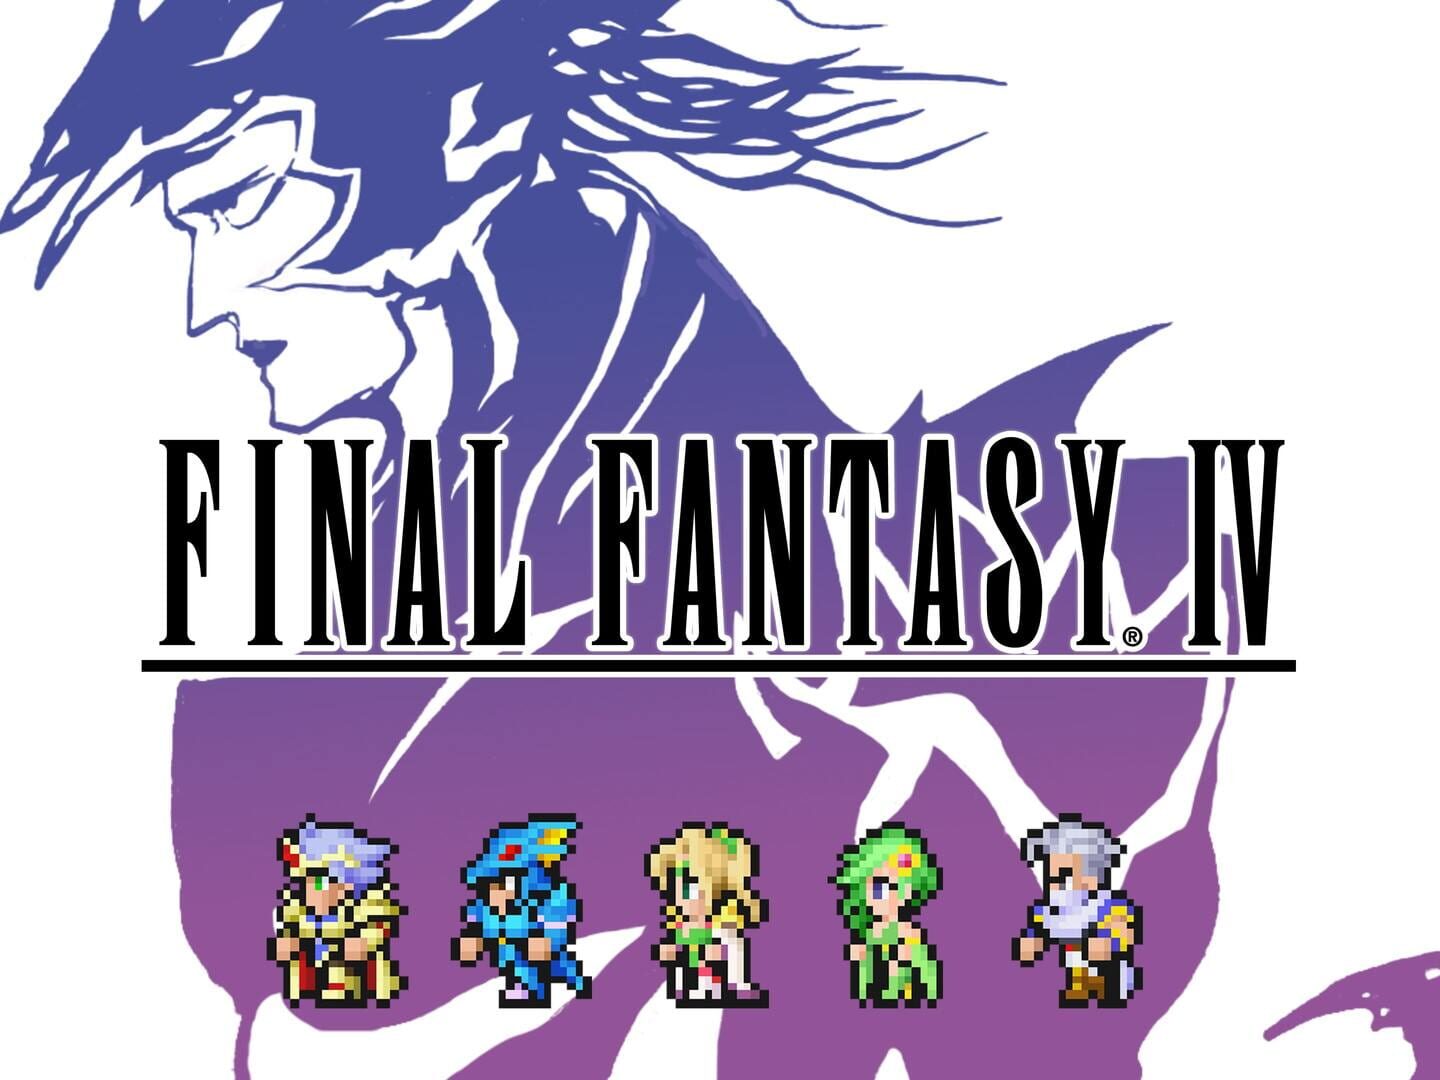 Arte - Final Fantasy IV